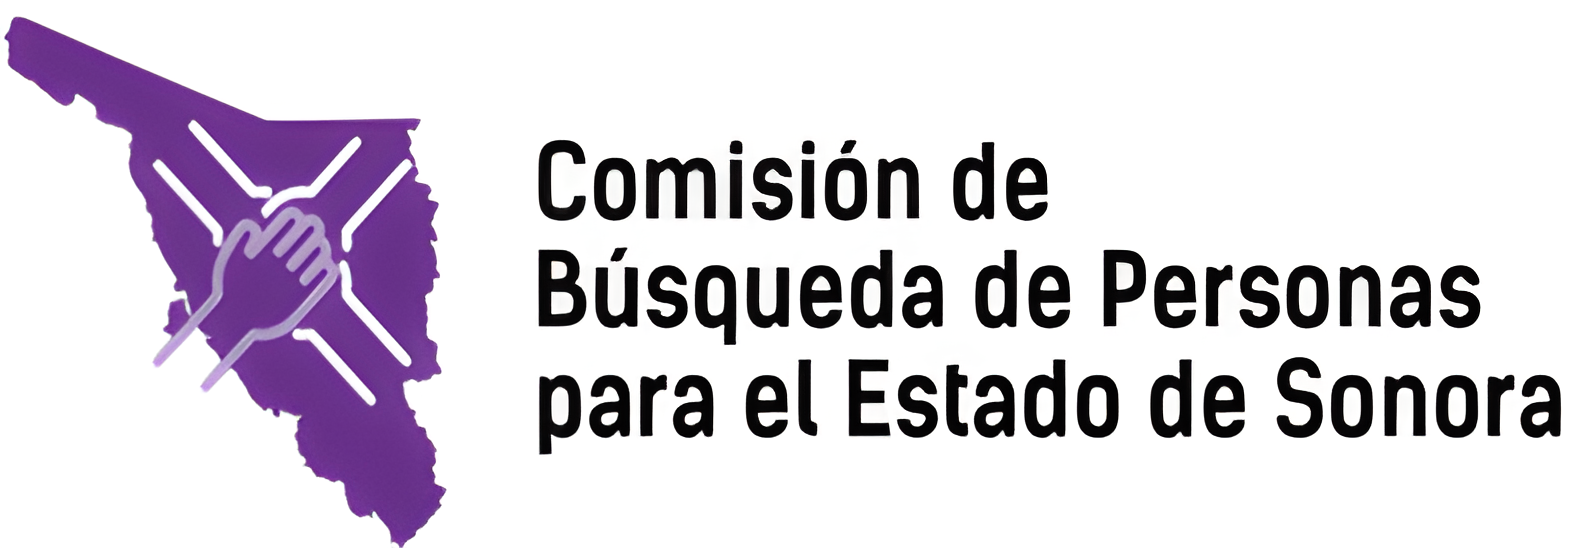 Comisión de Búsqueda de Personas para el Estado de Sonora